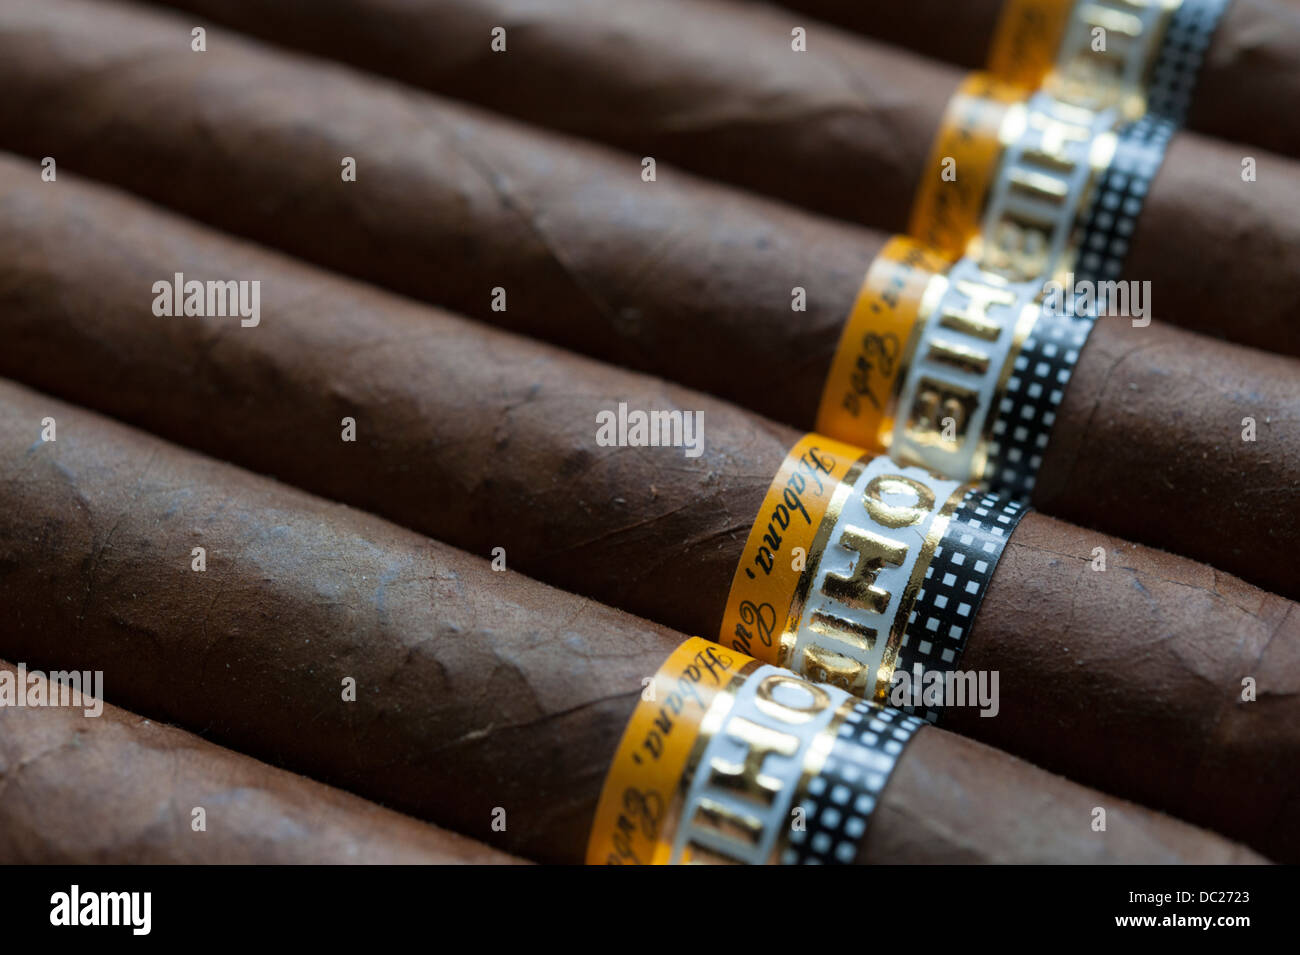 Cohiba esplendido sigari Avana da Cuba Foto Stock